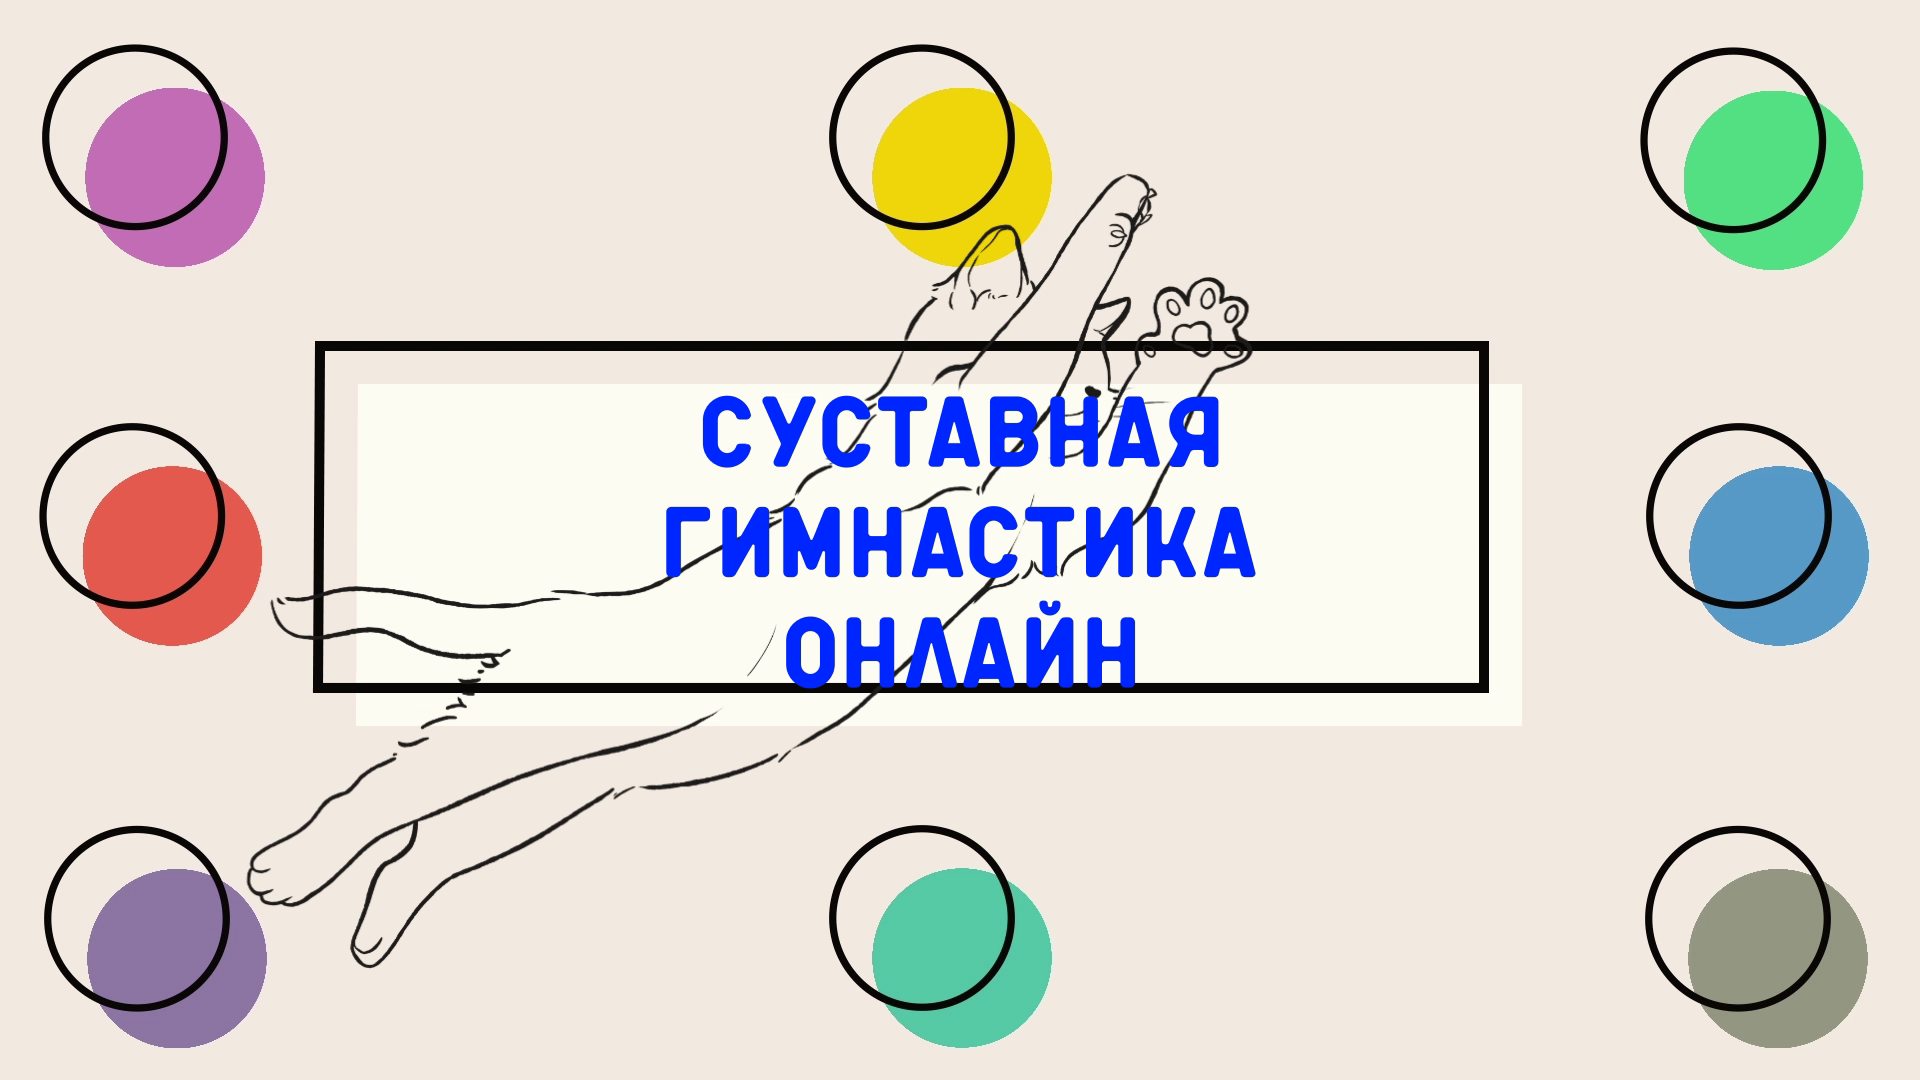 Фитнес ОНЛАЙН| Суставная гимнастика от проекта Московское долголетие|  Для тазобедренных суставов